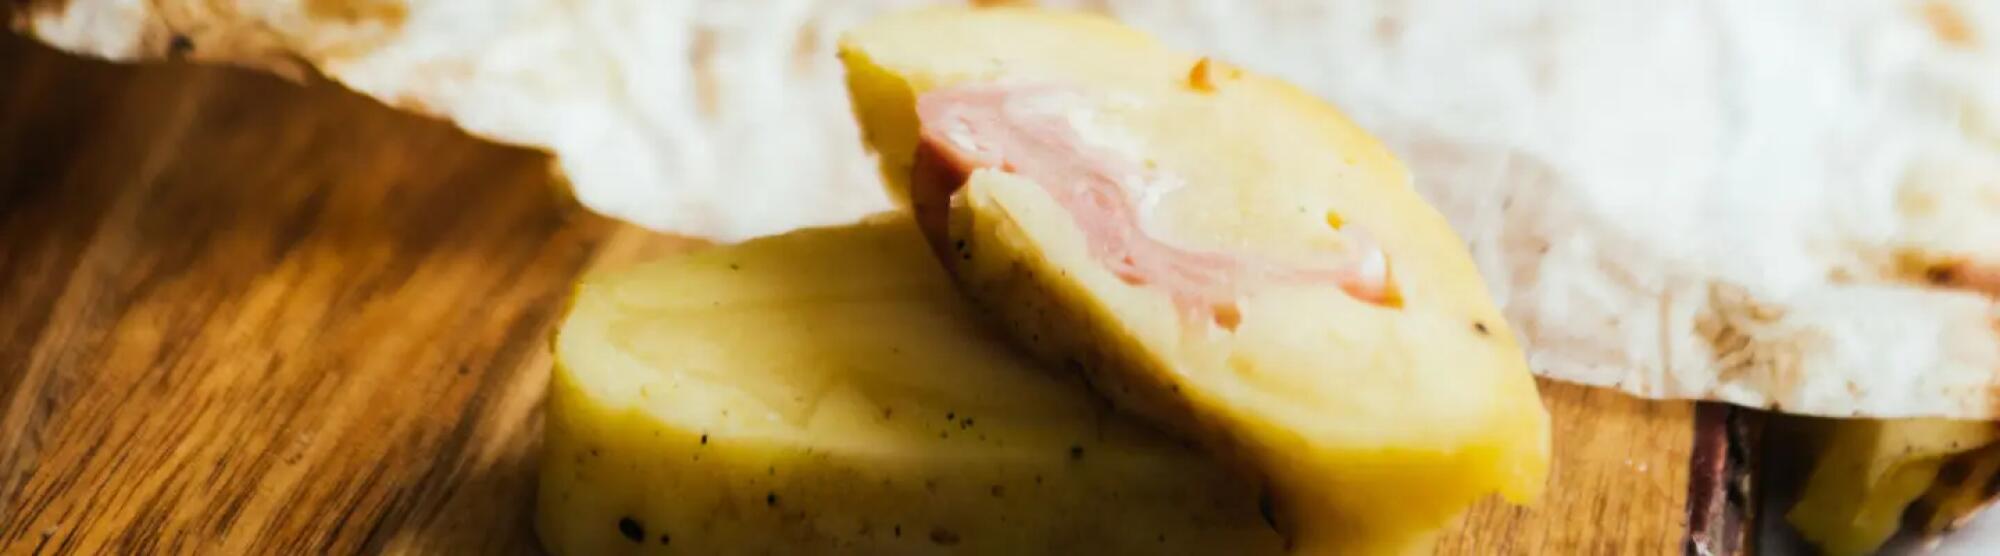 Recette : Roulé de pomme de terre et fromage à raclette